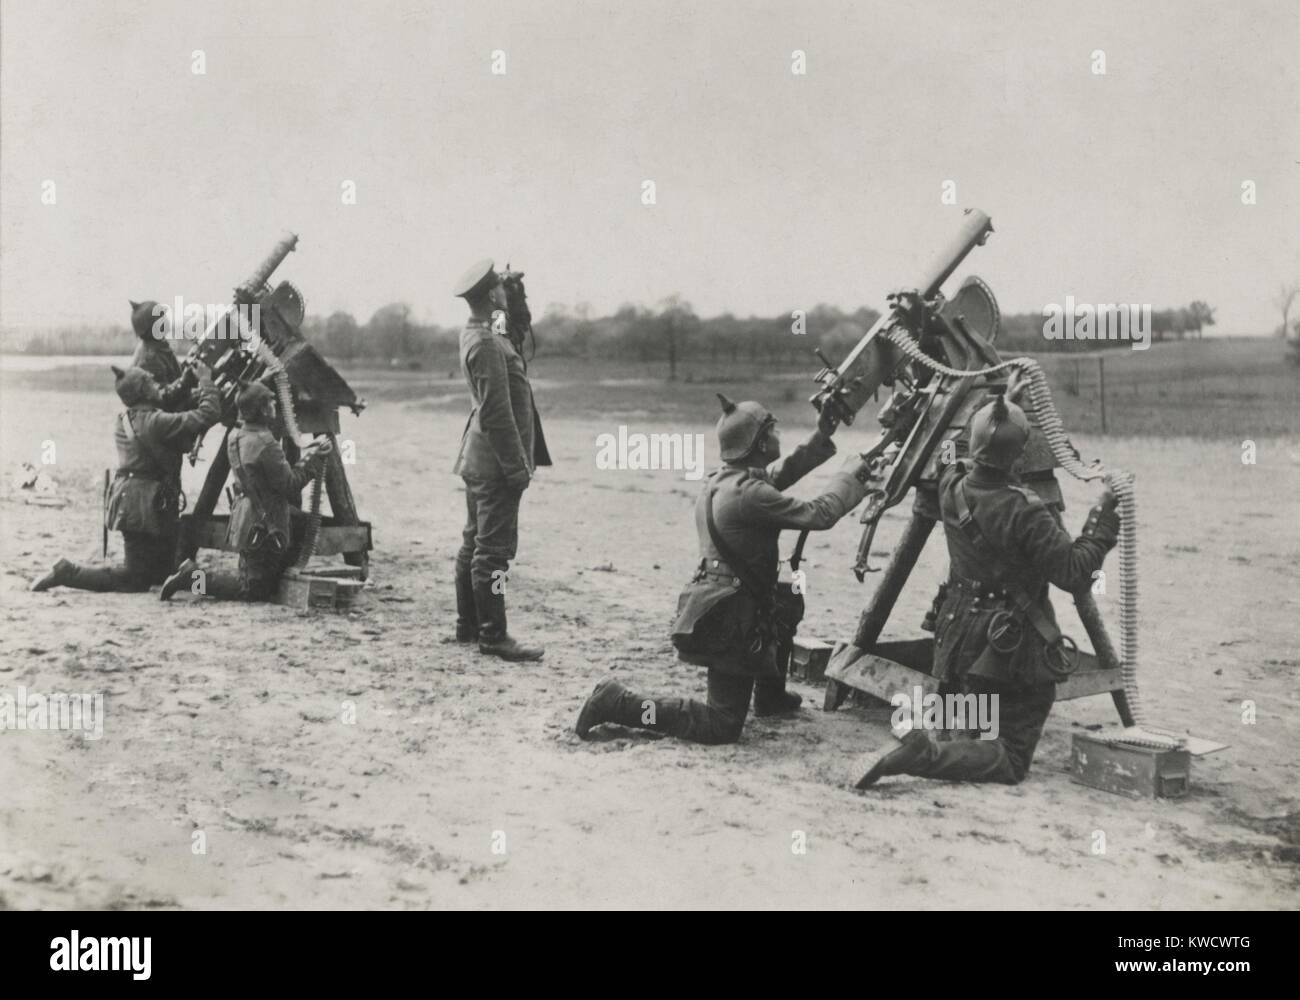 Les soldats allemands sur le front de l'Est visant les mitraillettes durant la Seconde Guerre mondiale (1 BSLOC 2017 1 24) Banque D'Images